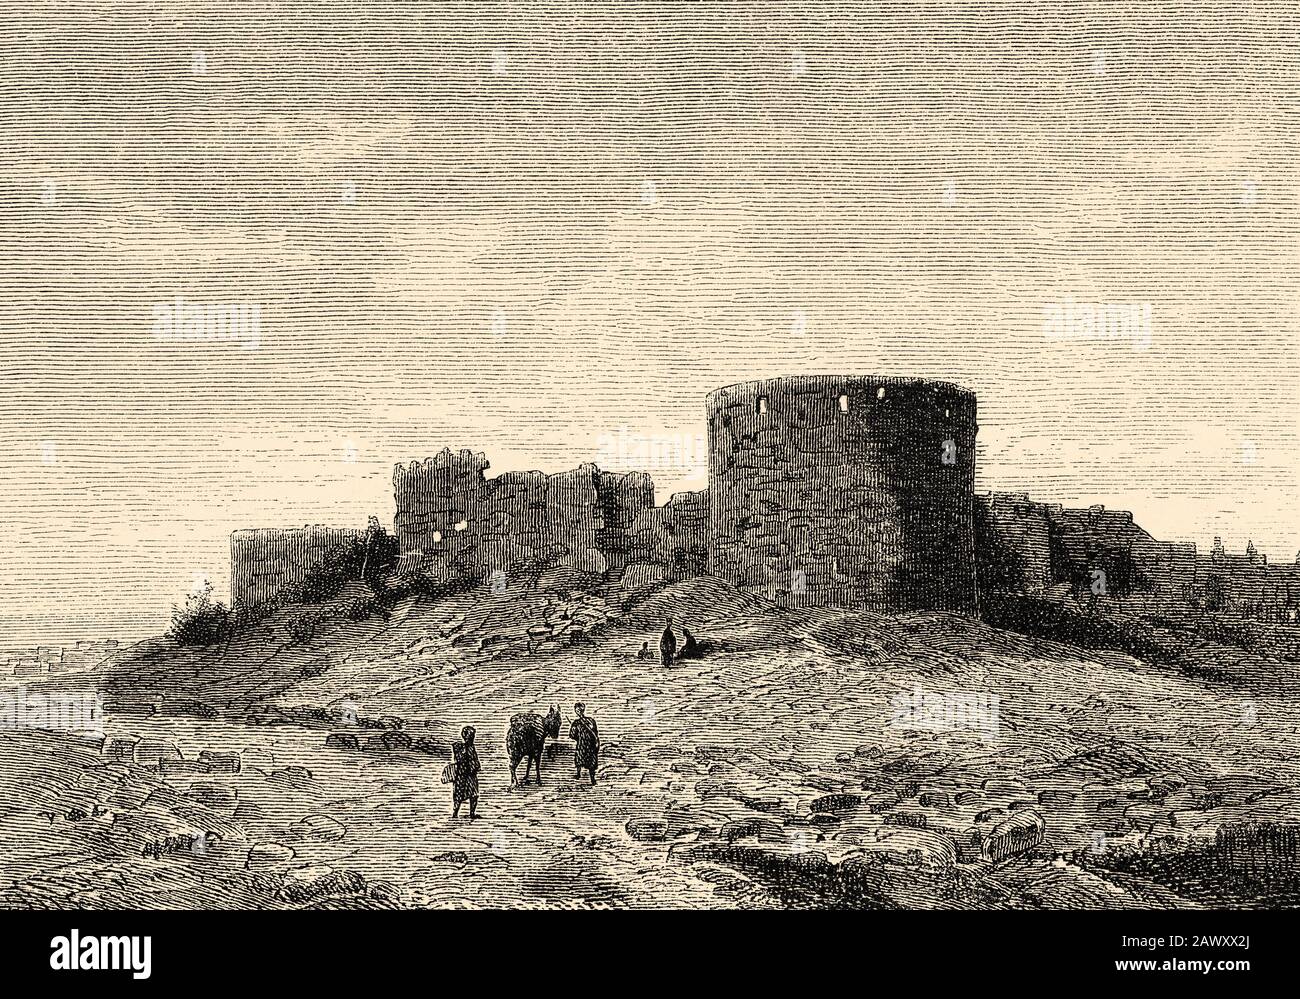 Storico castello crociato a Sidon, Saida. Libano, Medio Oriente, Asia Occidentale. Vecchia illustrazione dell'incisione dal libro Storia universale di Oscar Jager 1 Foto Stock